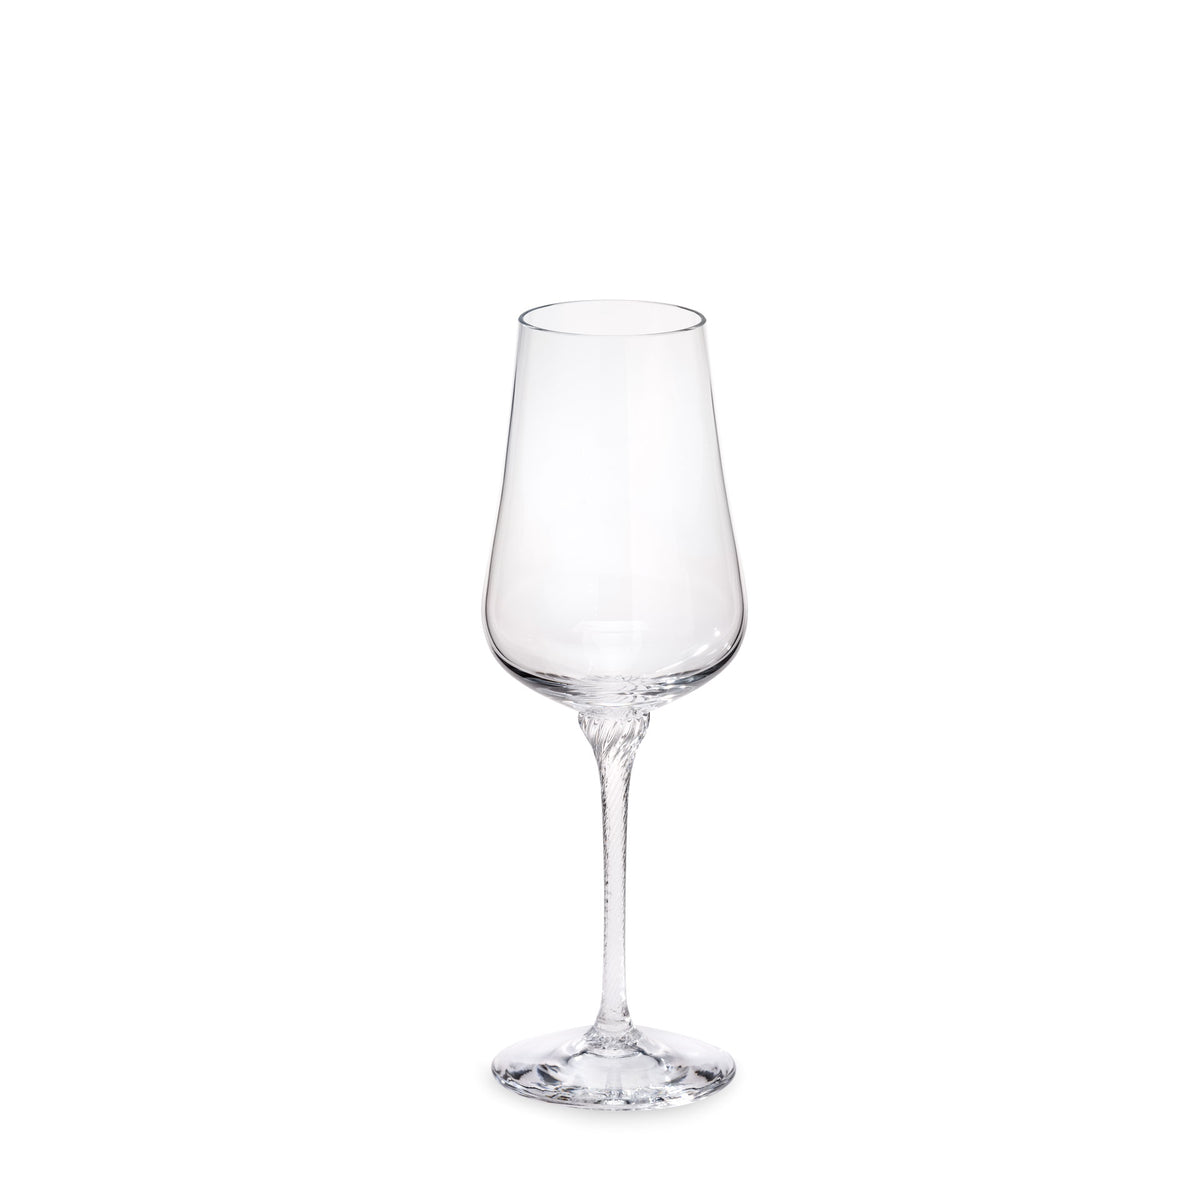 Grand Cru Vin blanc Weißweinglas - ABVERKAUF -50% REDUZIERT